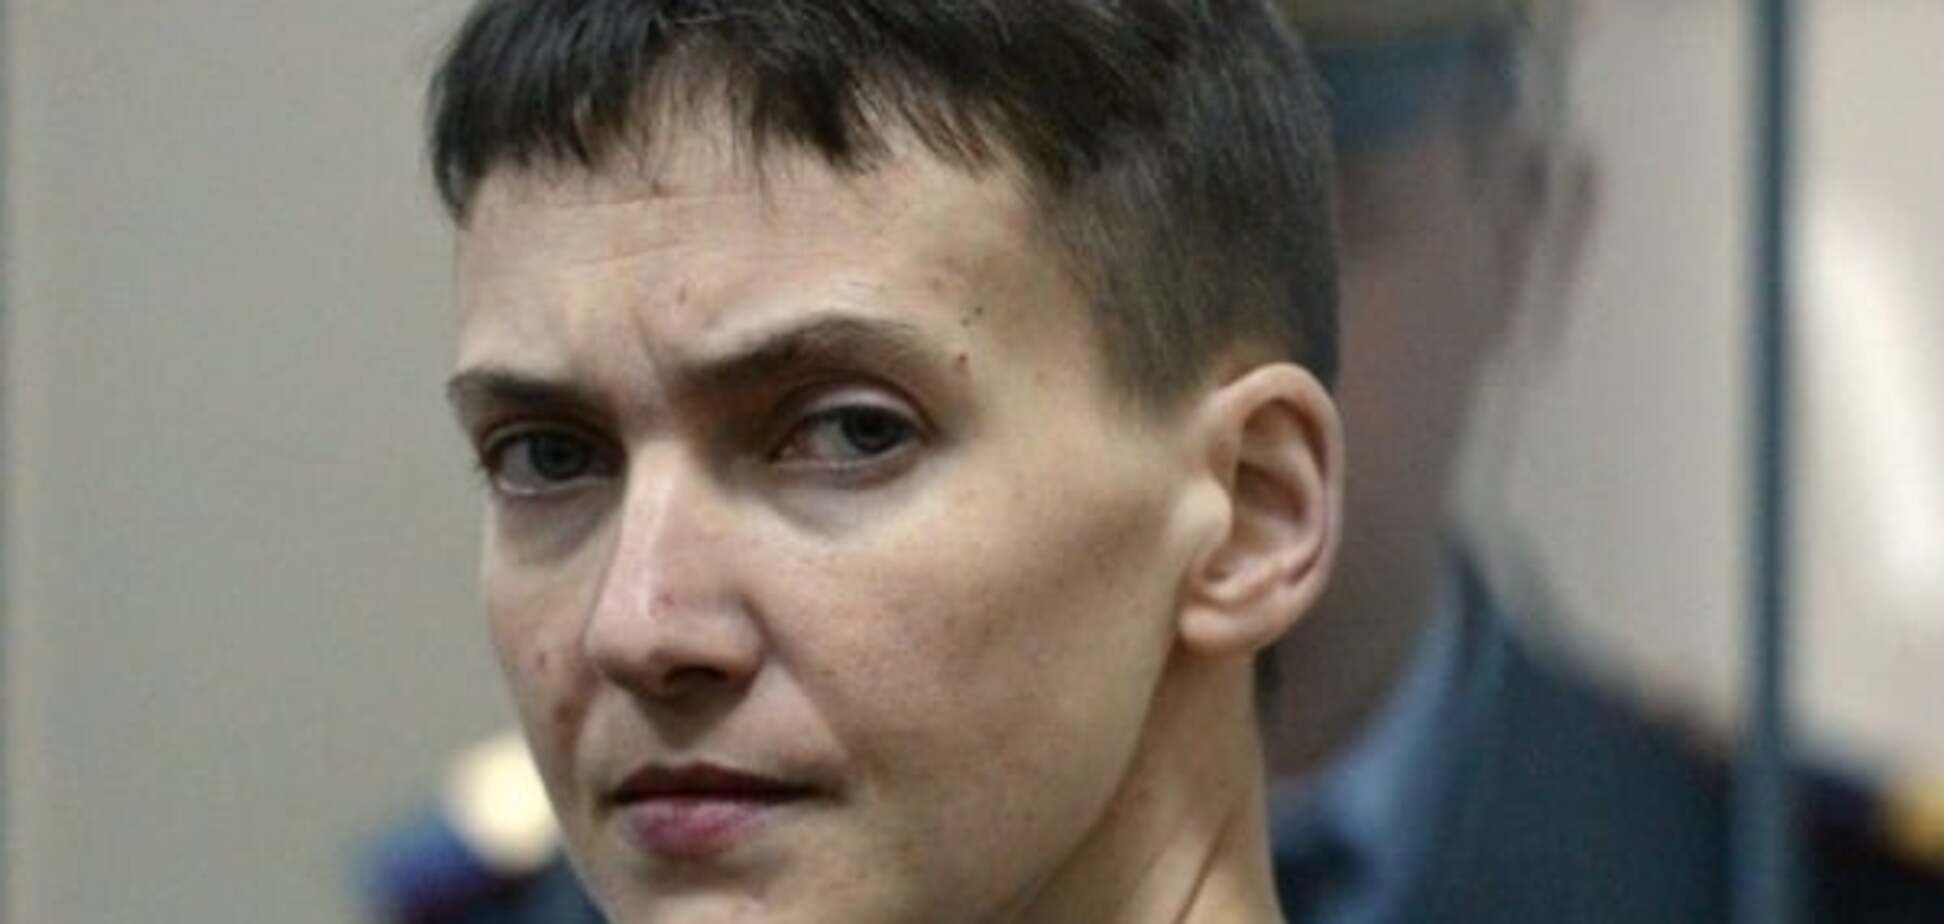 Время истекает: здоровье и жизнь Савченко тают на глазах - адвокат